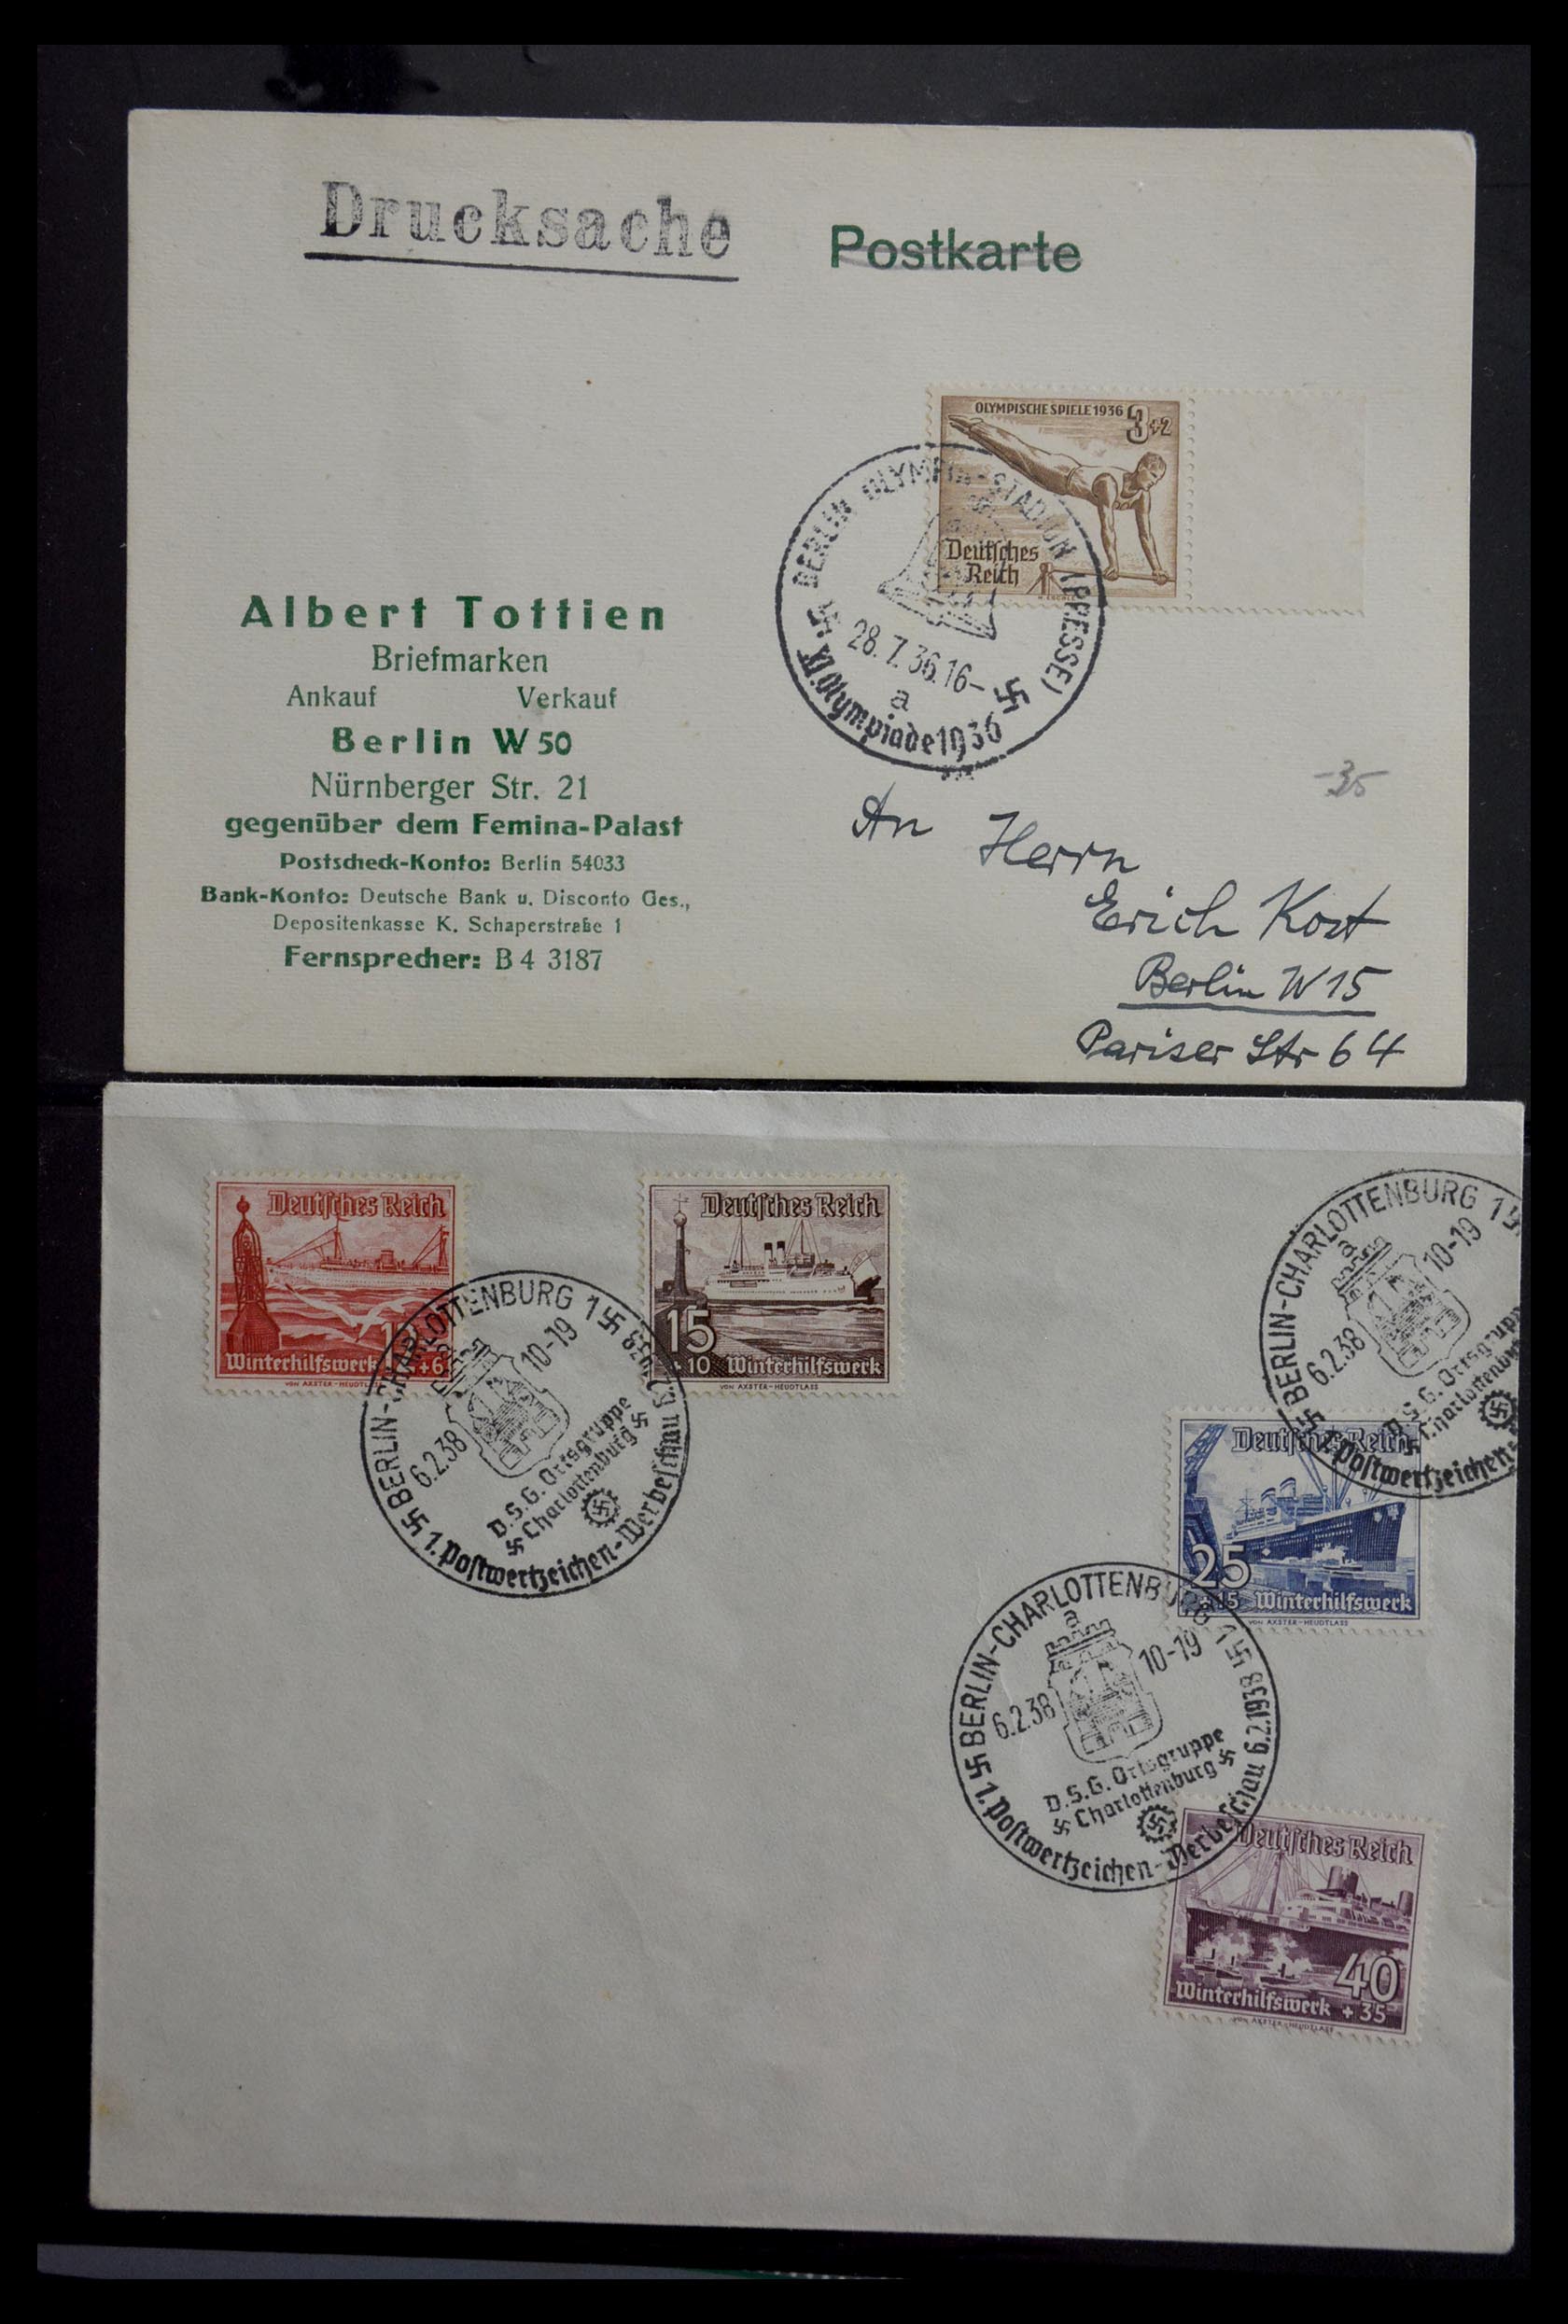 29382 001 - 29382 Duitsland brieven en FDC's 1936-1965.